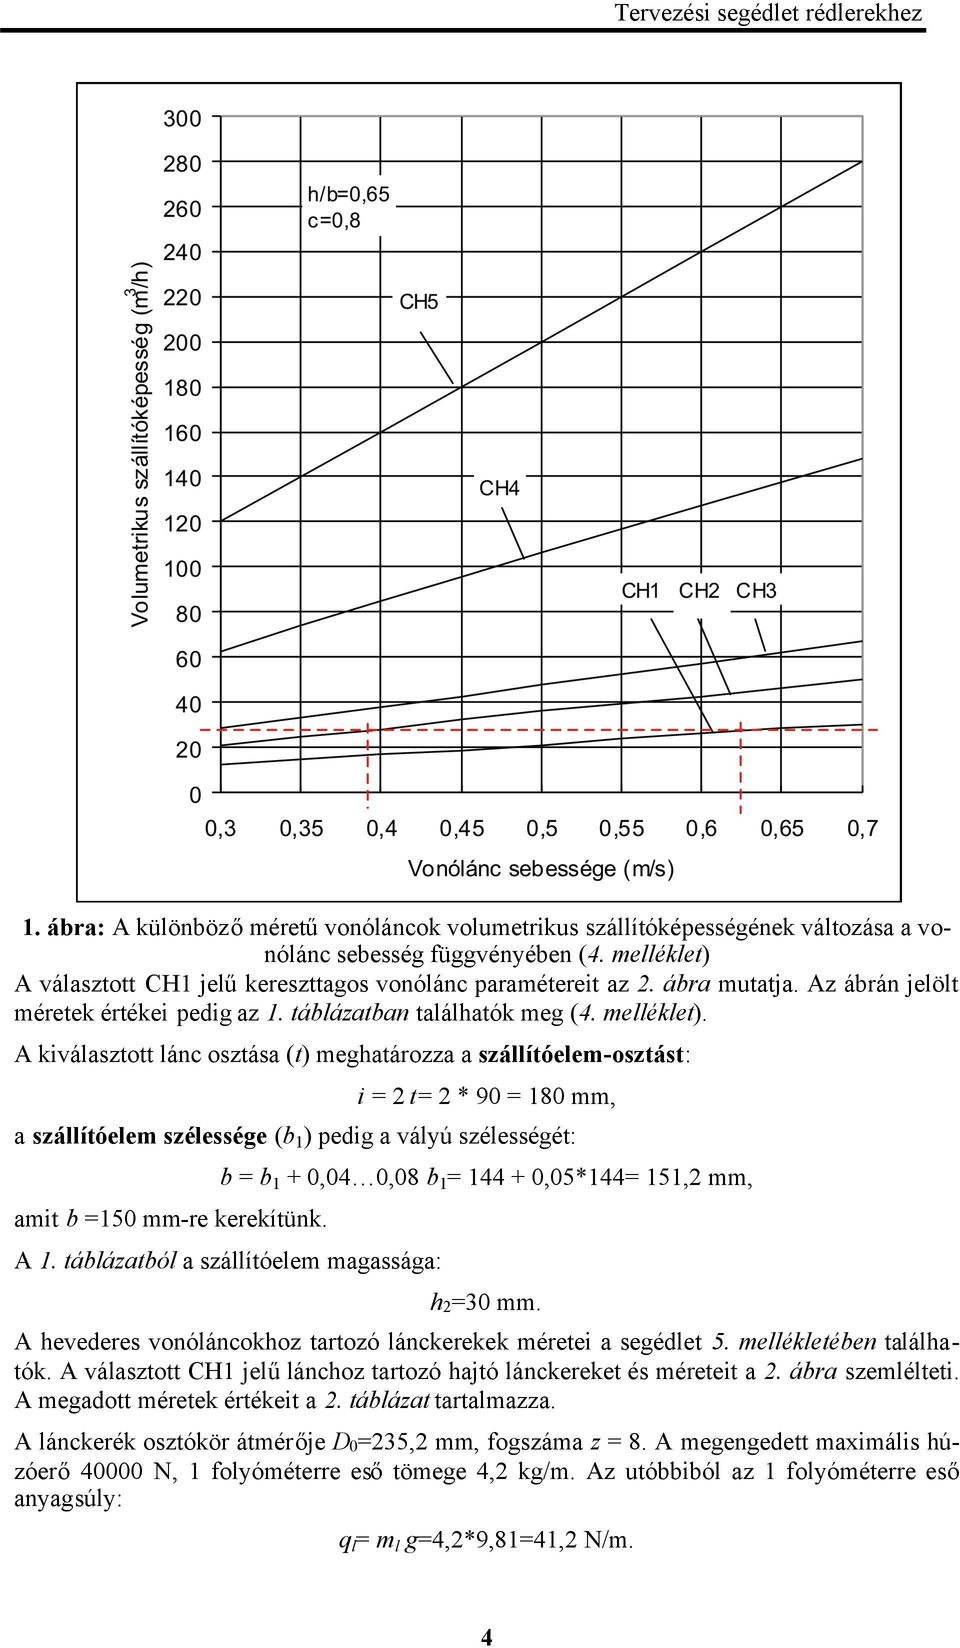 A kiválasztott lánc osztása (t) meghatározza a szállítóelem-osztást: i = t= * 90 = 0 mm, a szállítóelem szélessége (b ) pedig a vályú szélességét: amit b =50 mm-re kerekítünk.